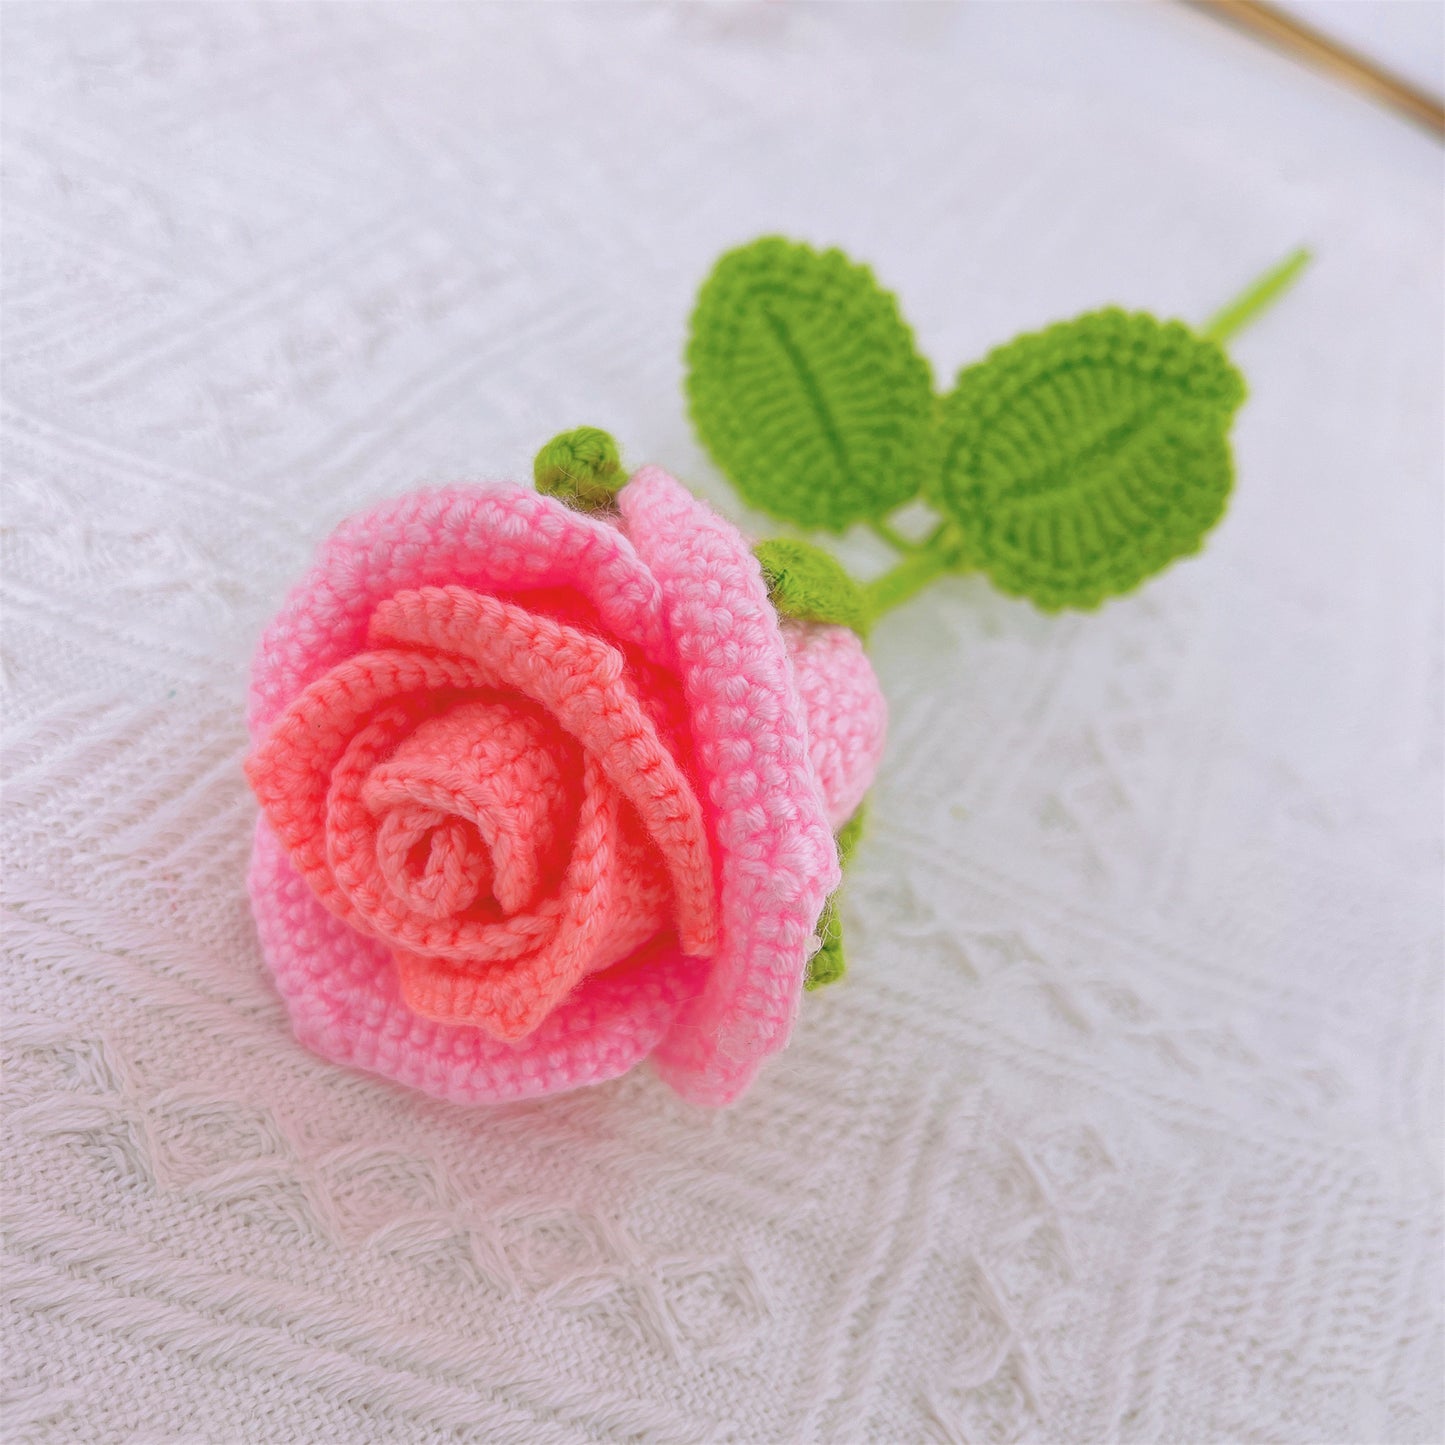 Handgefertigte gehäkelte Rosen in Tassenform – aus Garn gefertigt, Heimdekoration, Geschenkidee, einzigartig und elegant, symbolische Blume, Vatertagsgeschenke von der Tochter